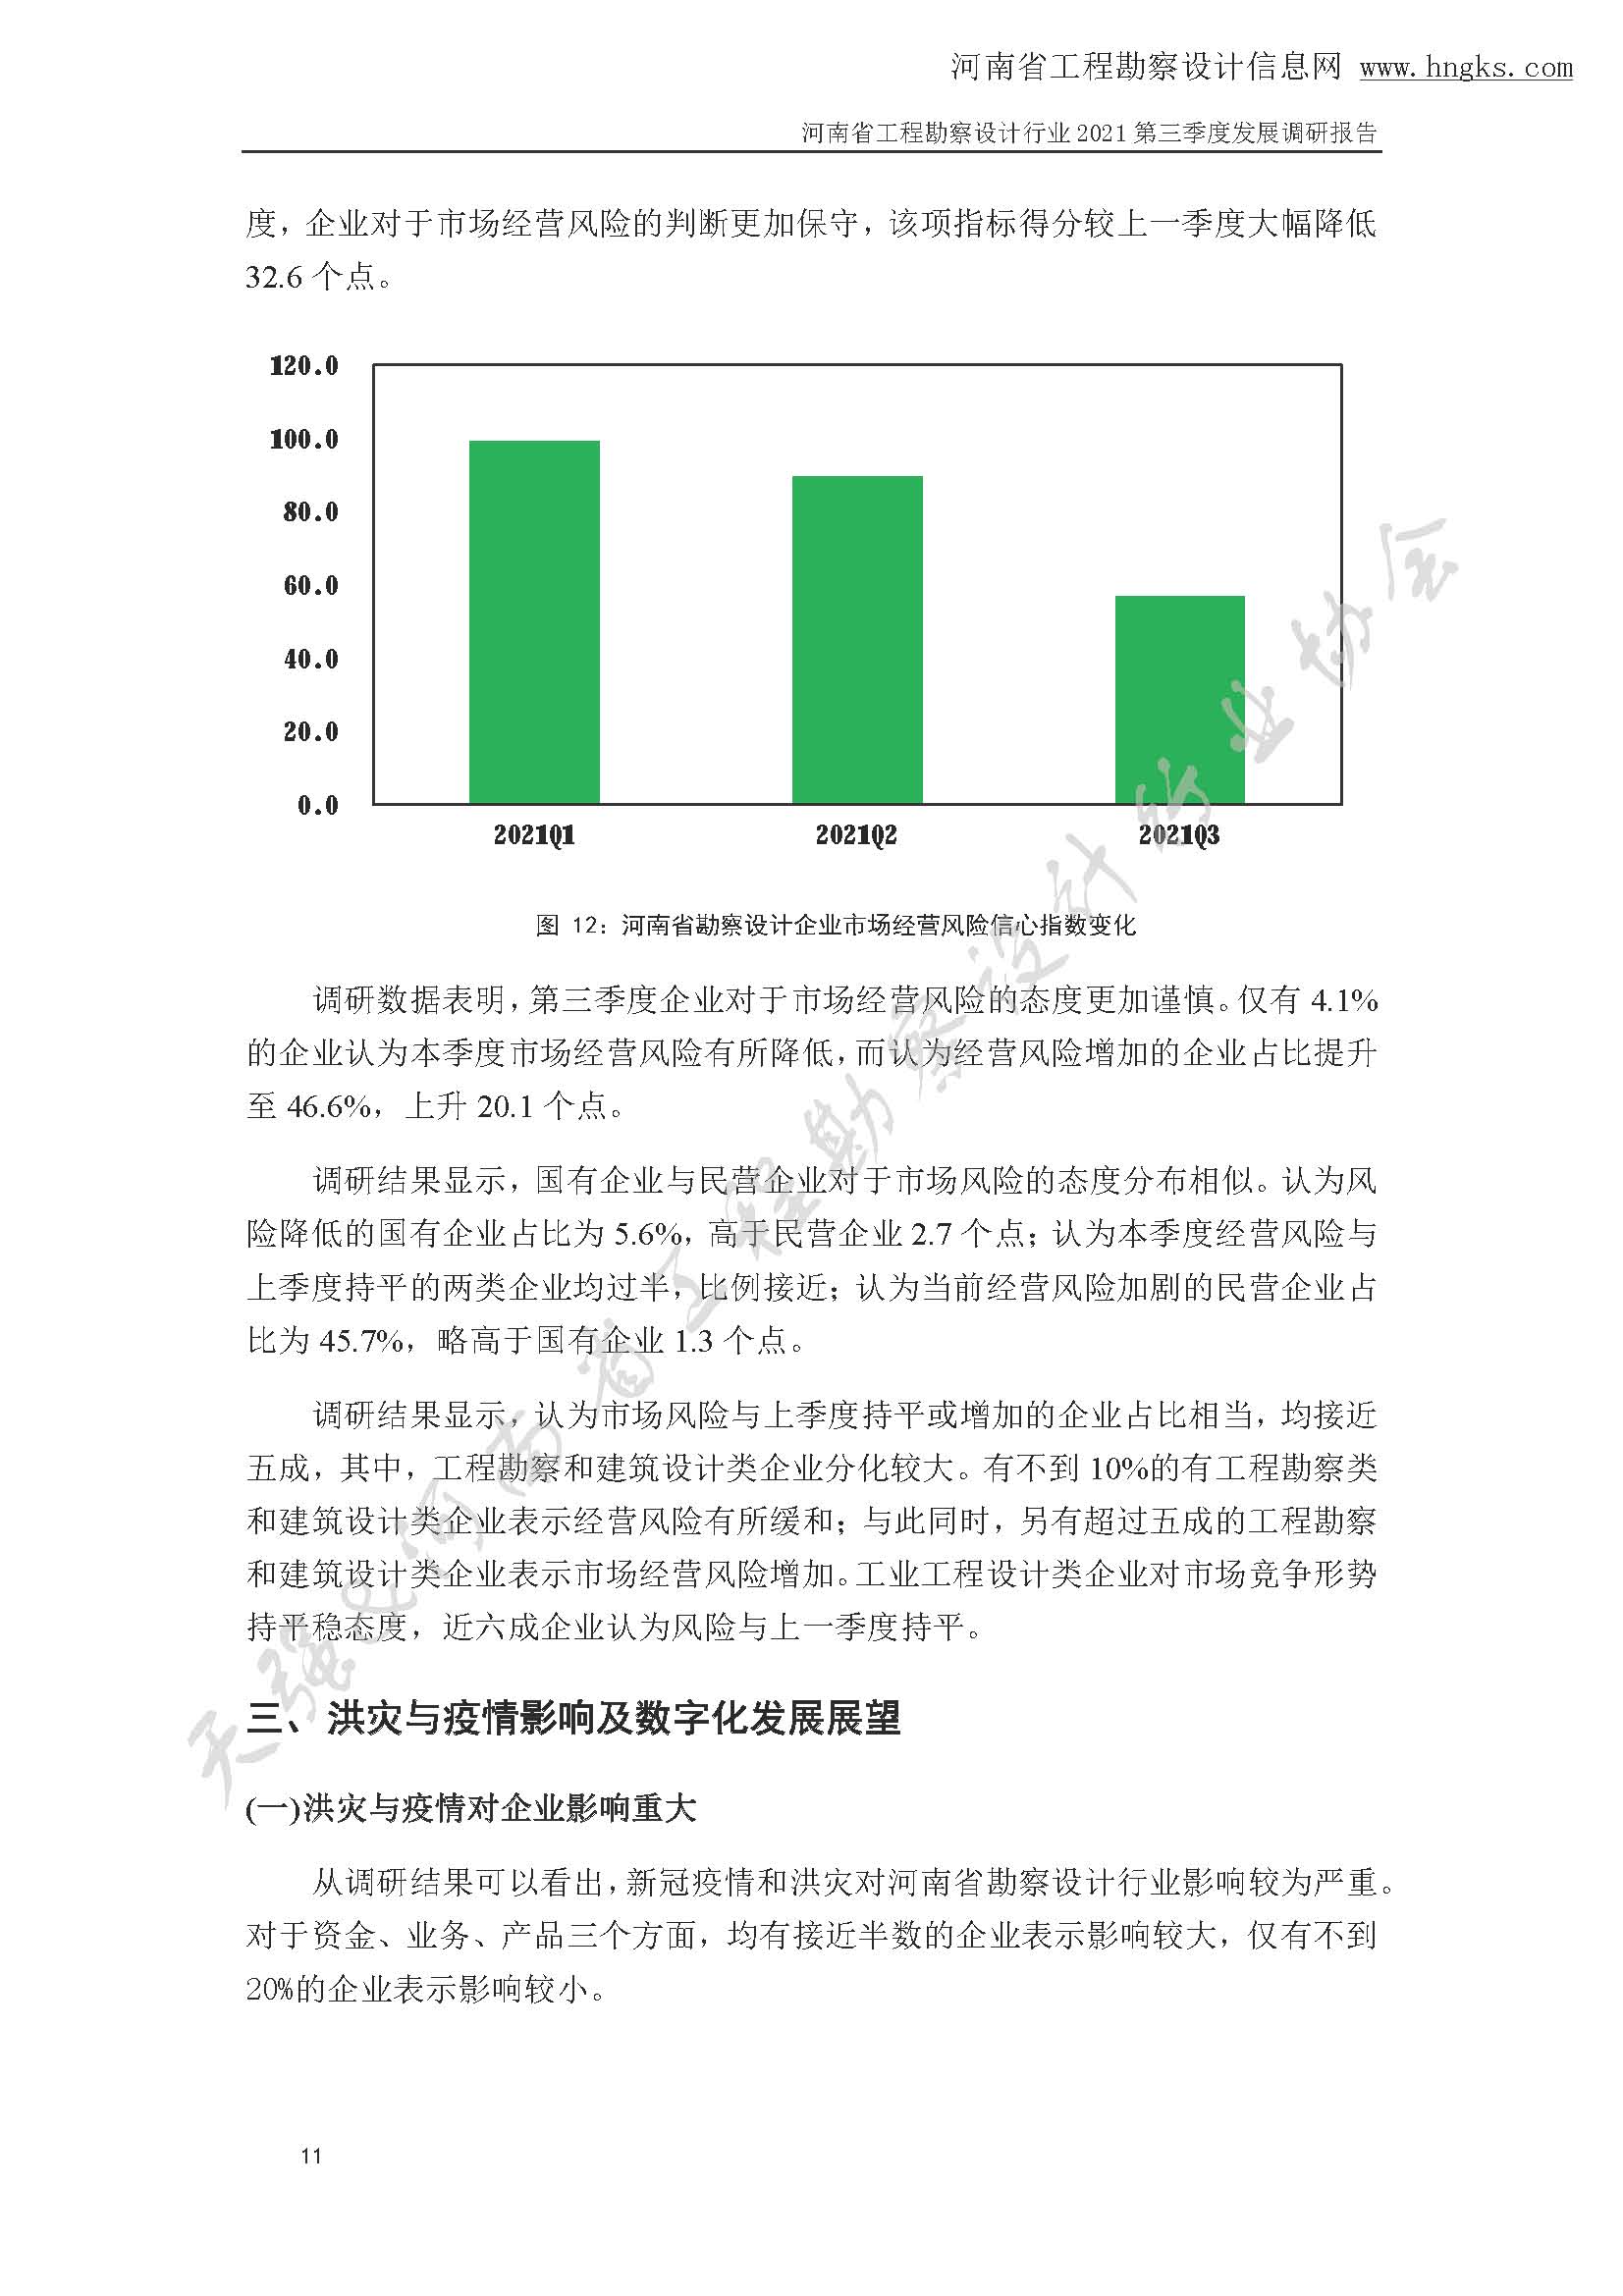 河南省工程勘察设计企业2021年第三季度发展调研报告-公开版_页面_14.jpg